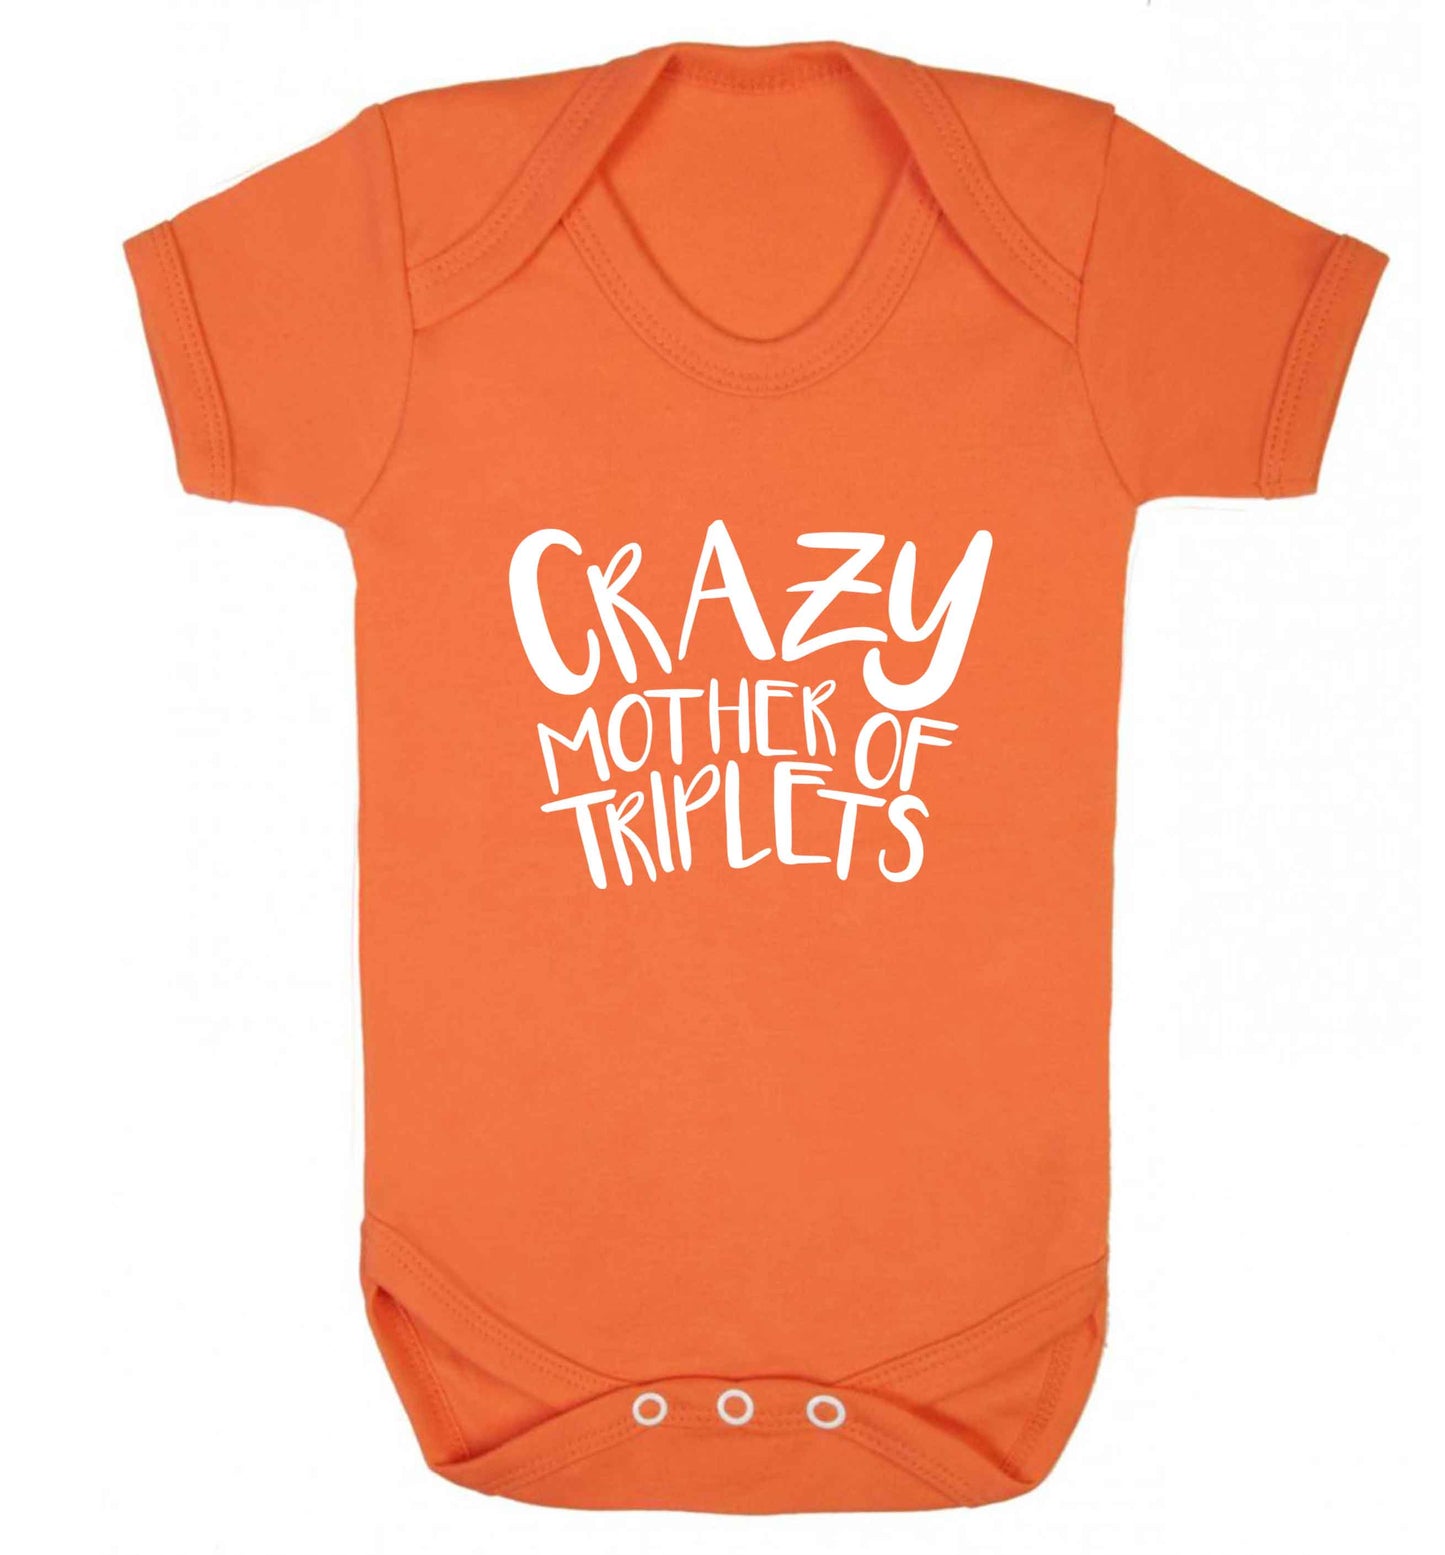 Crazy mother of triplets baby vest orange 18-24 months